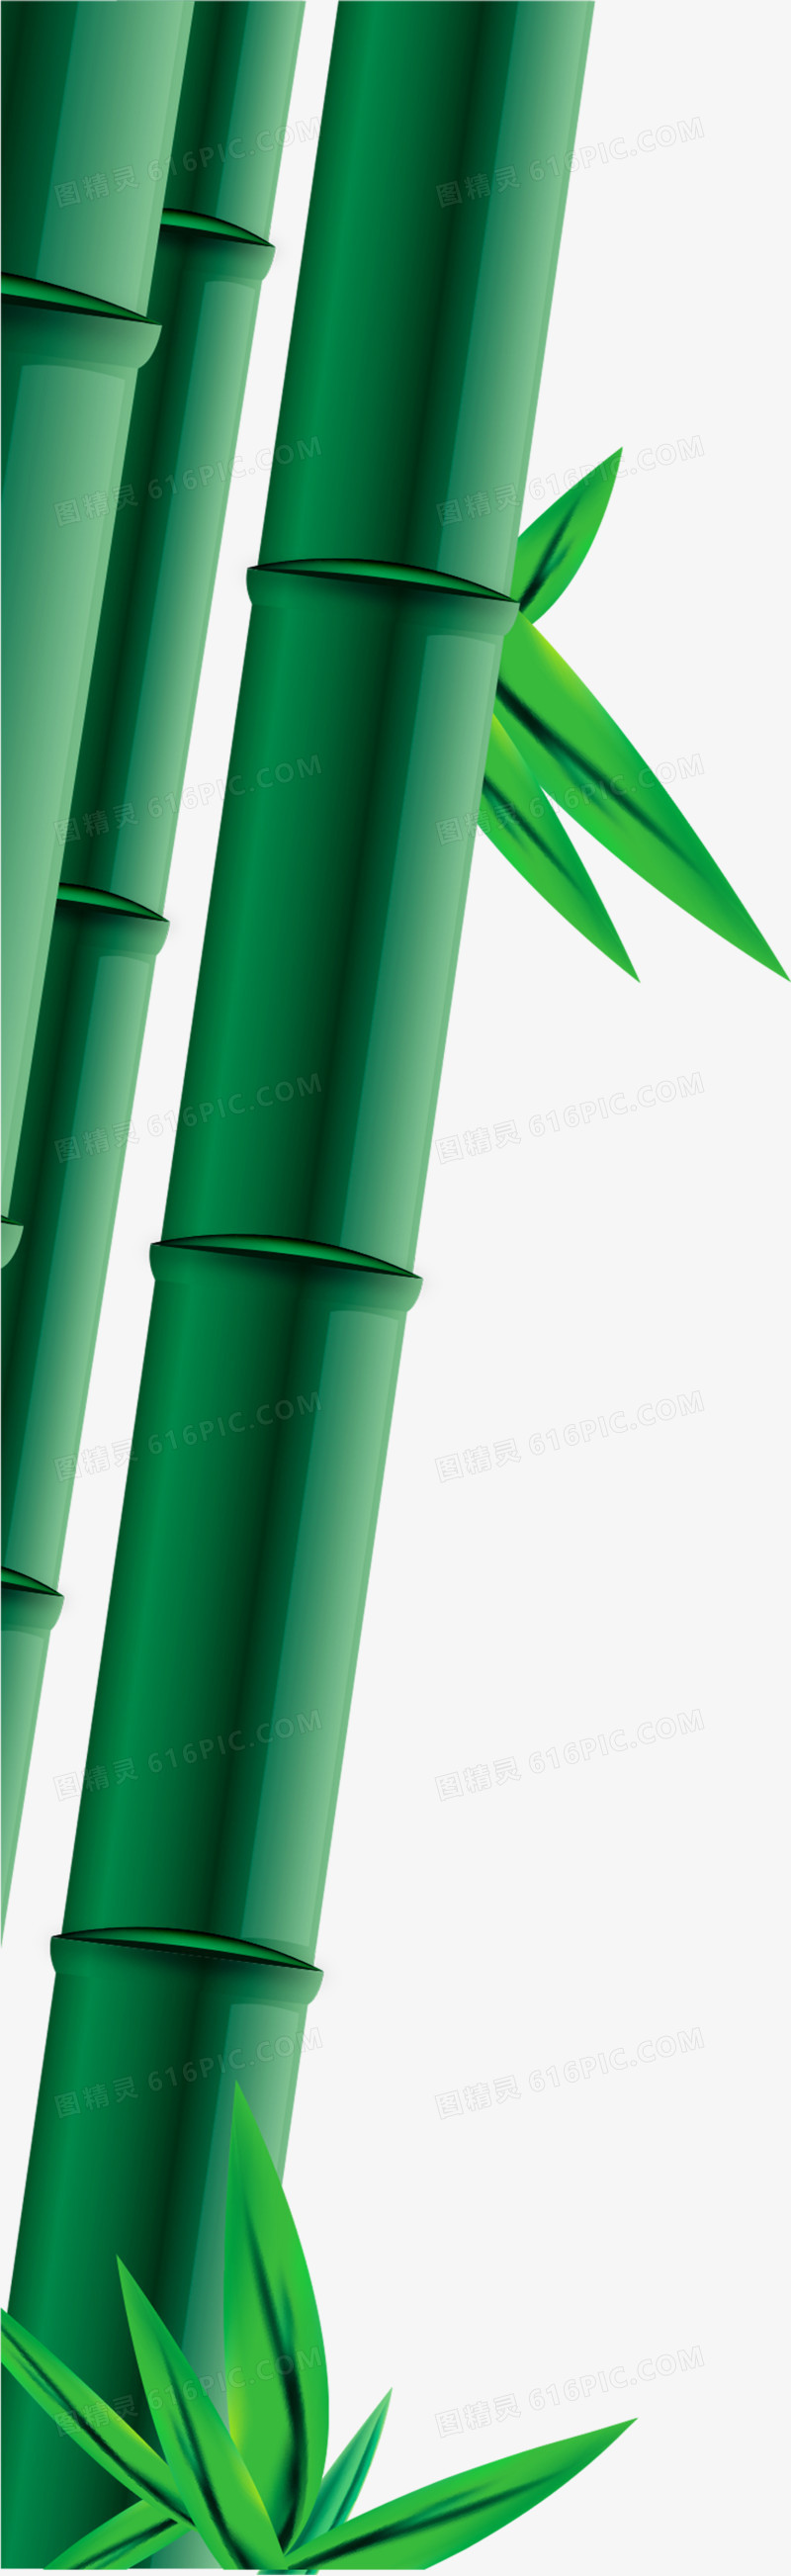 绿色竹子竹叶端午节装饰